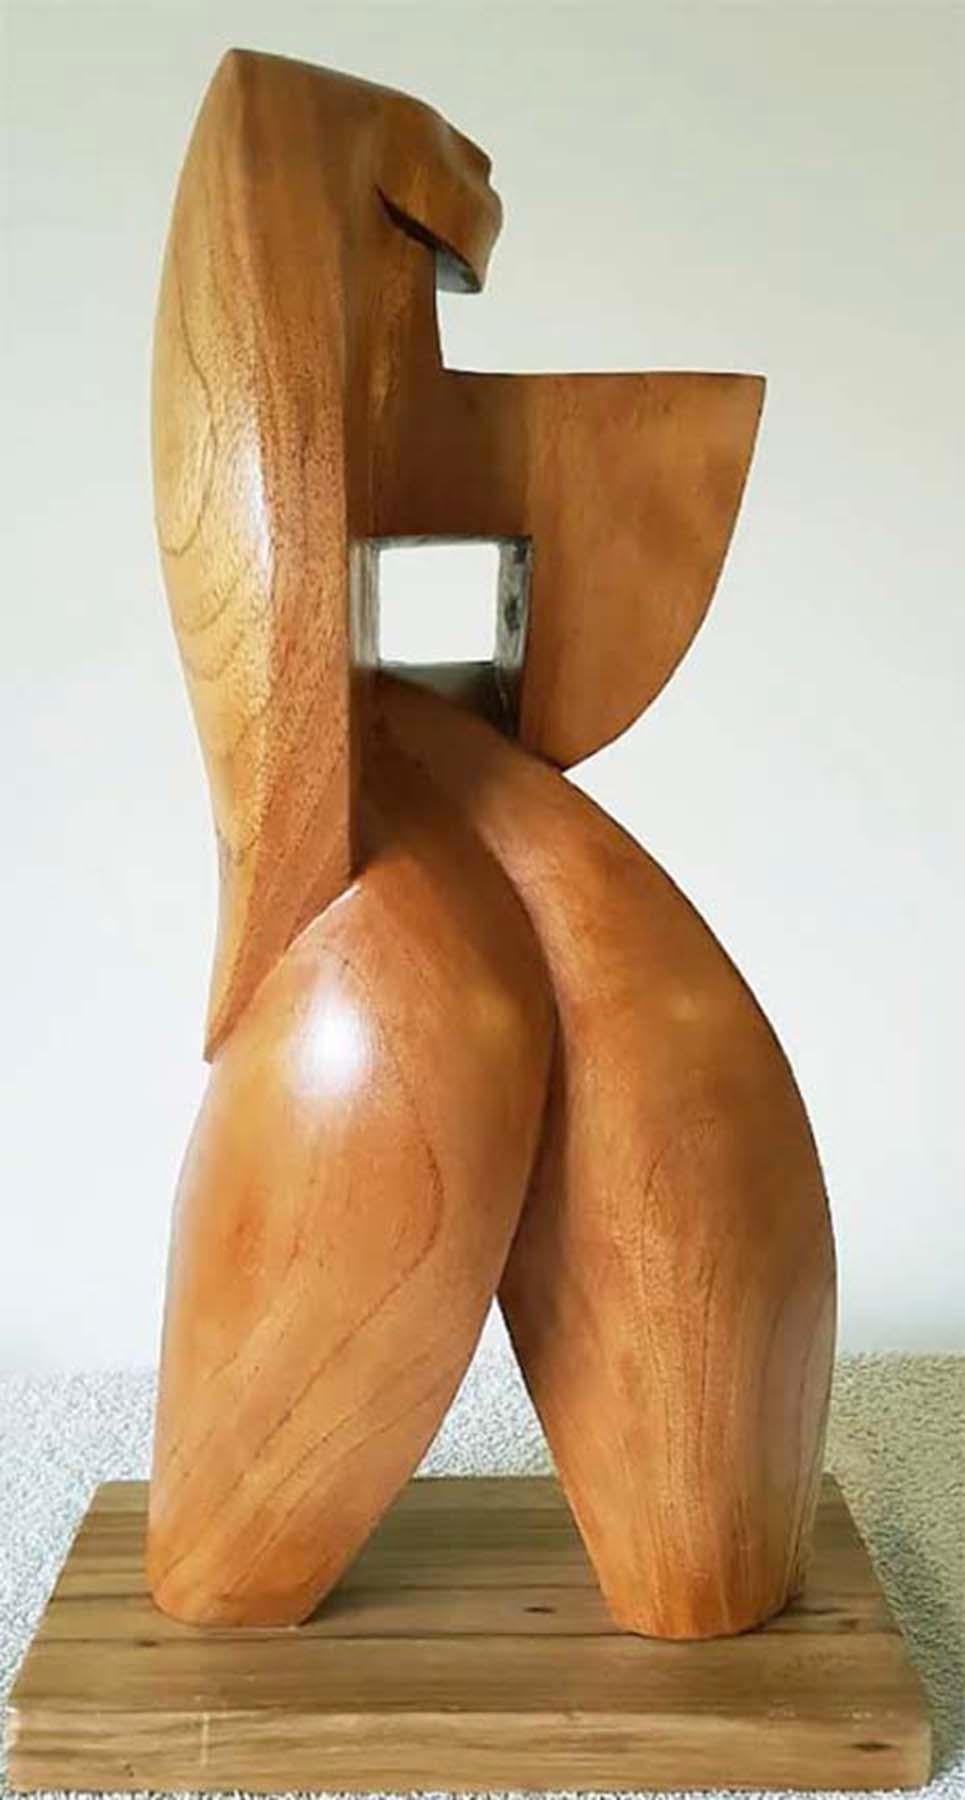 NANDAYURE - Sculpture by Ulises Jiménez Obregón 